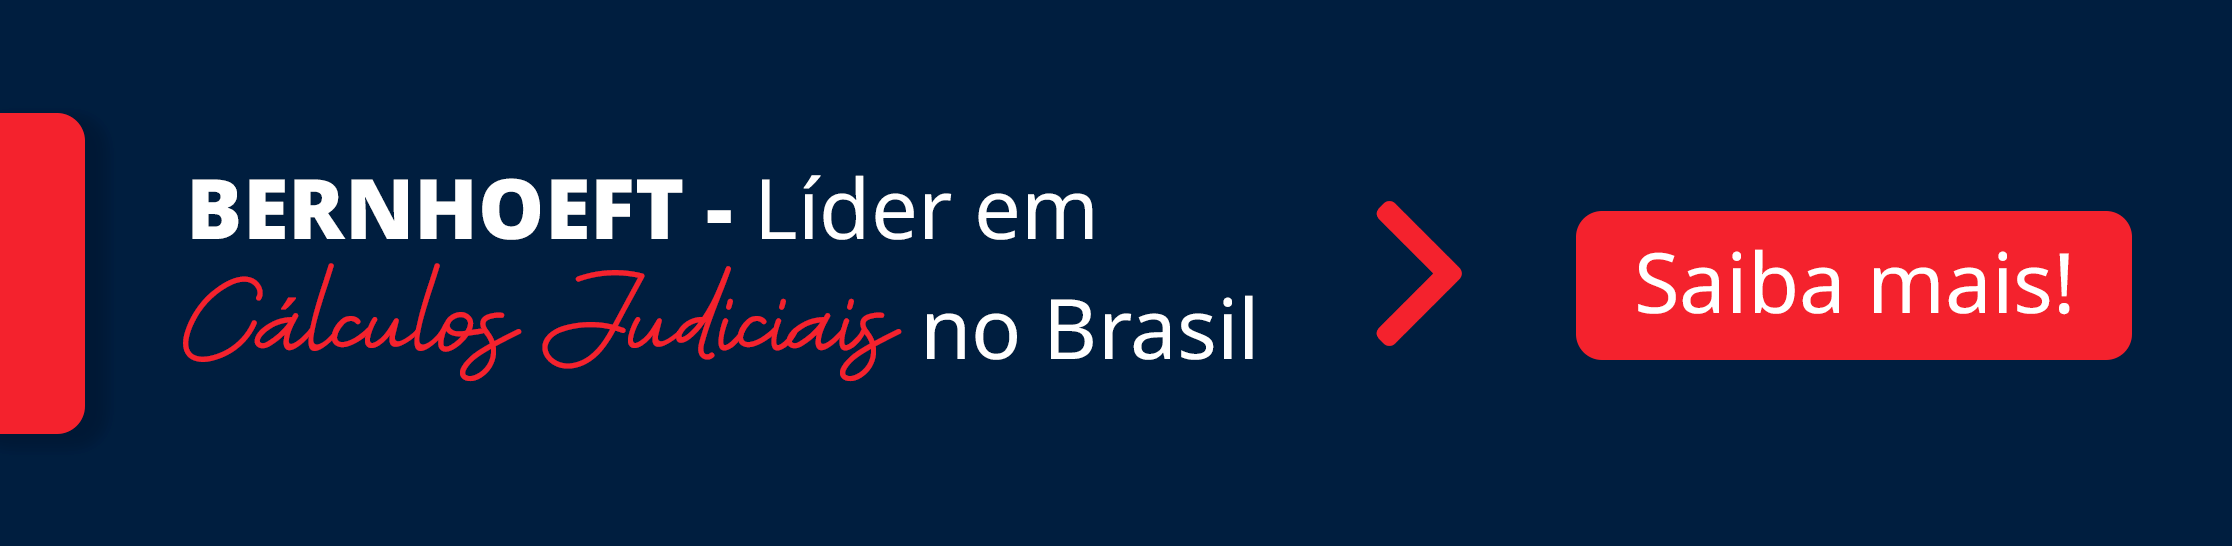 imagem com fundo azul detalhes em vermelho, frase em branco ''bernhoeft líder em cálculos judiciais no Brasil'' sendo ''cálculos judiciais'' escrito em vermelho